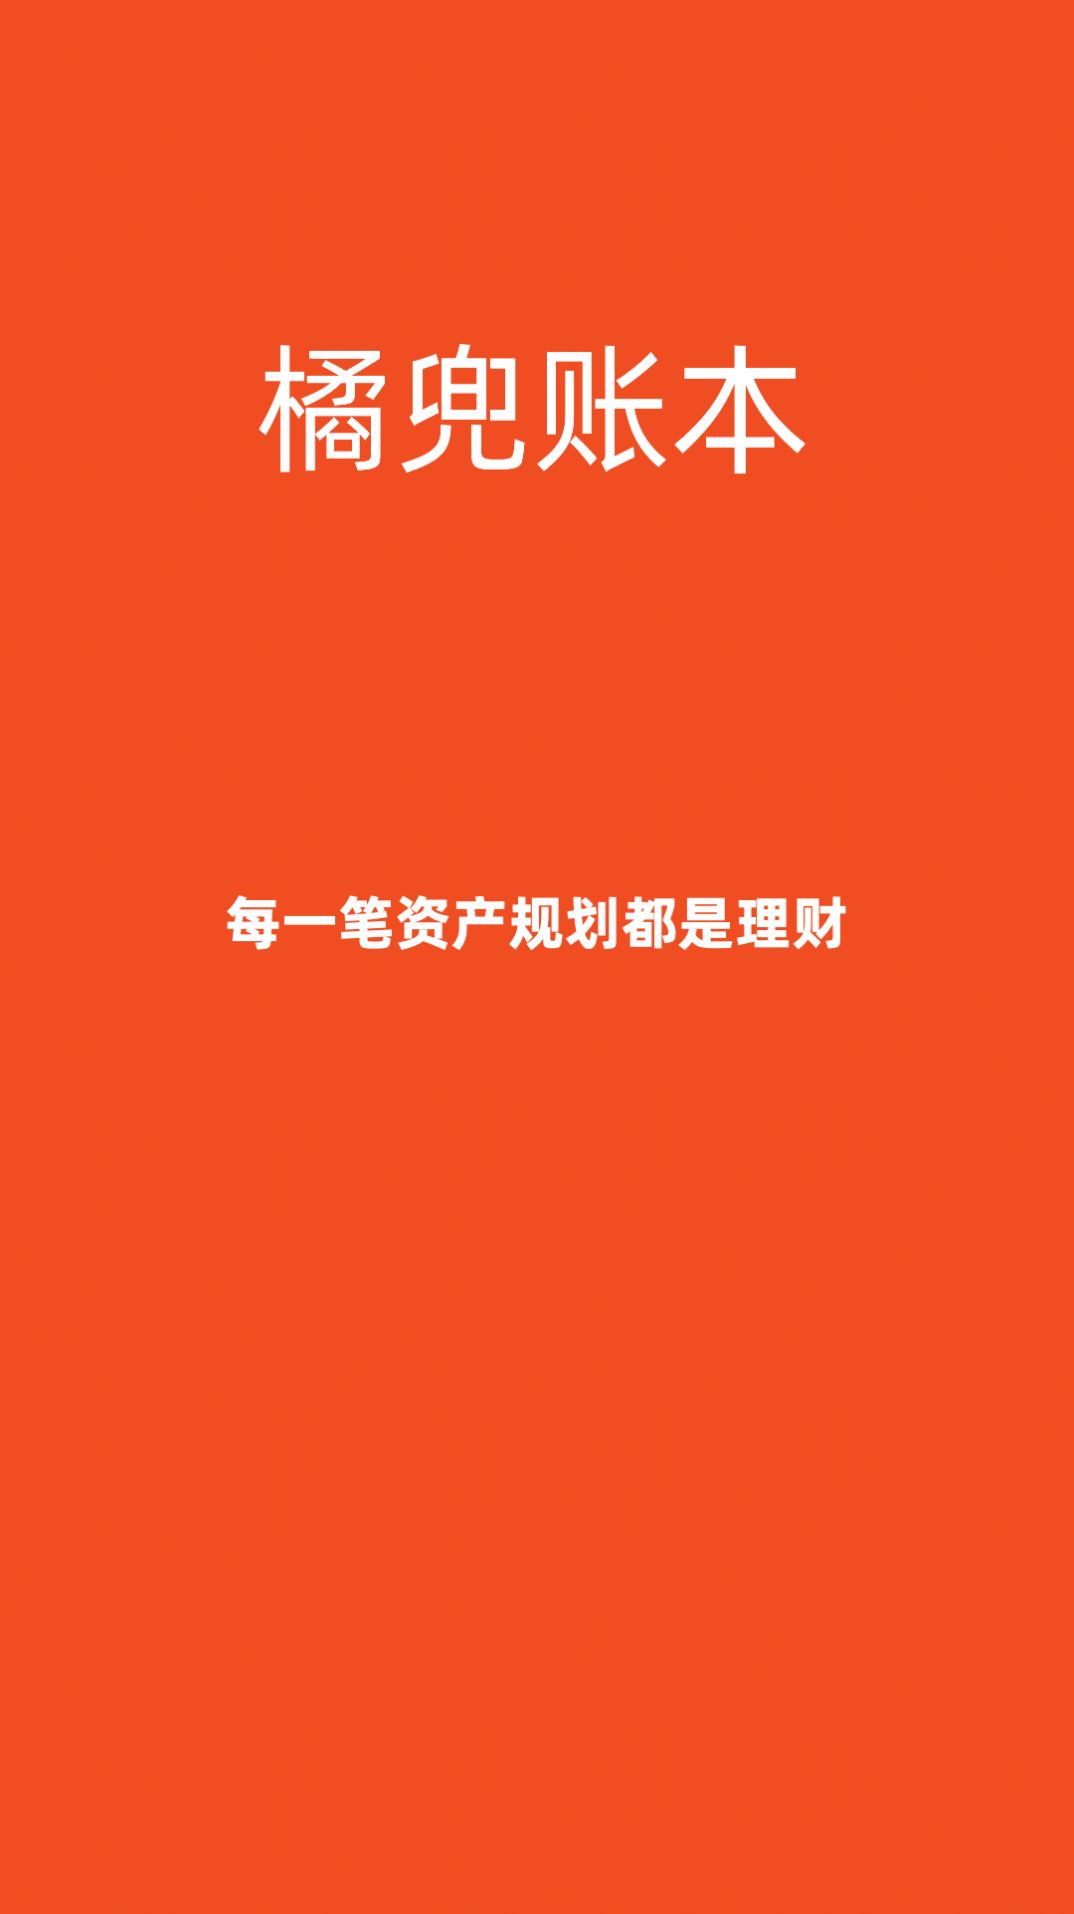 橘兜账本官方安卓app图片1